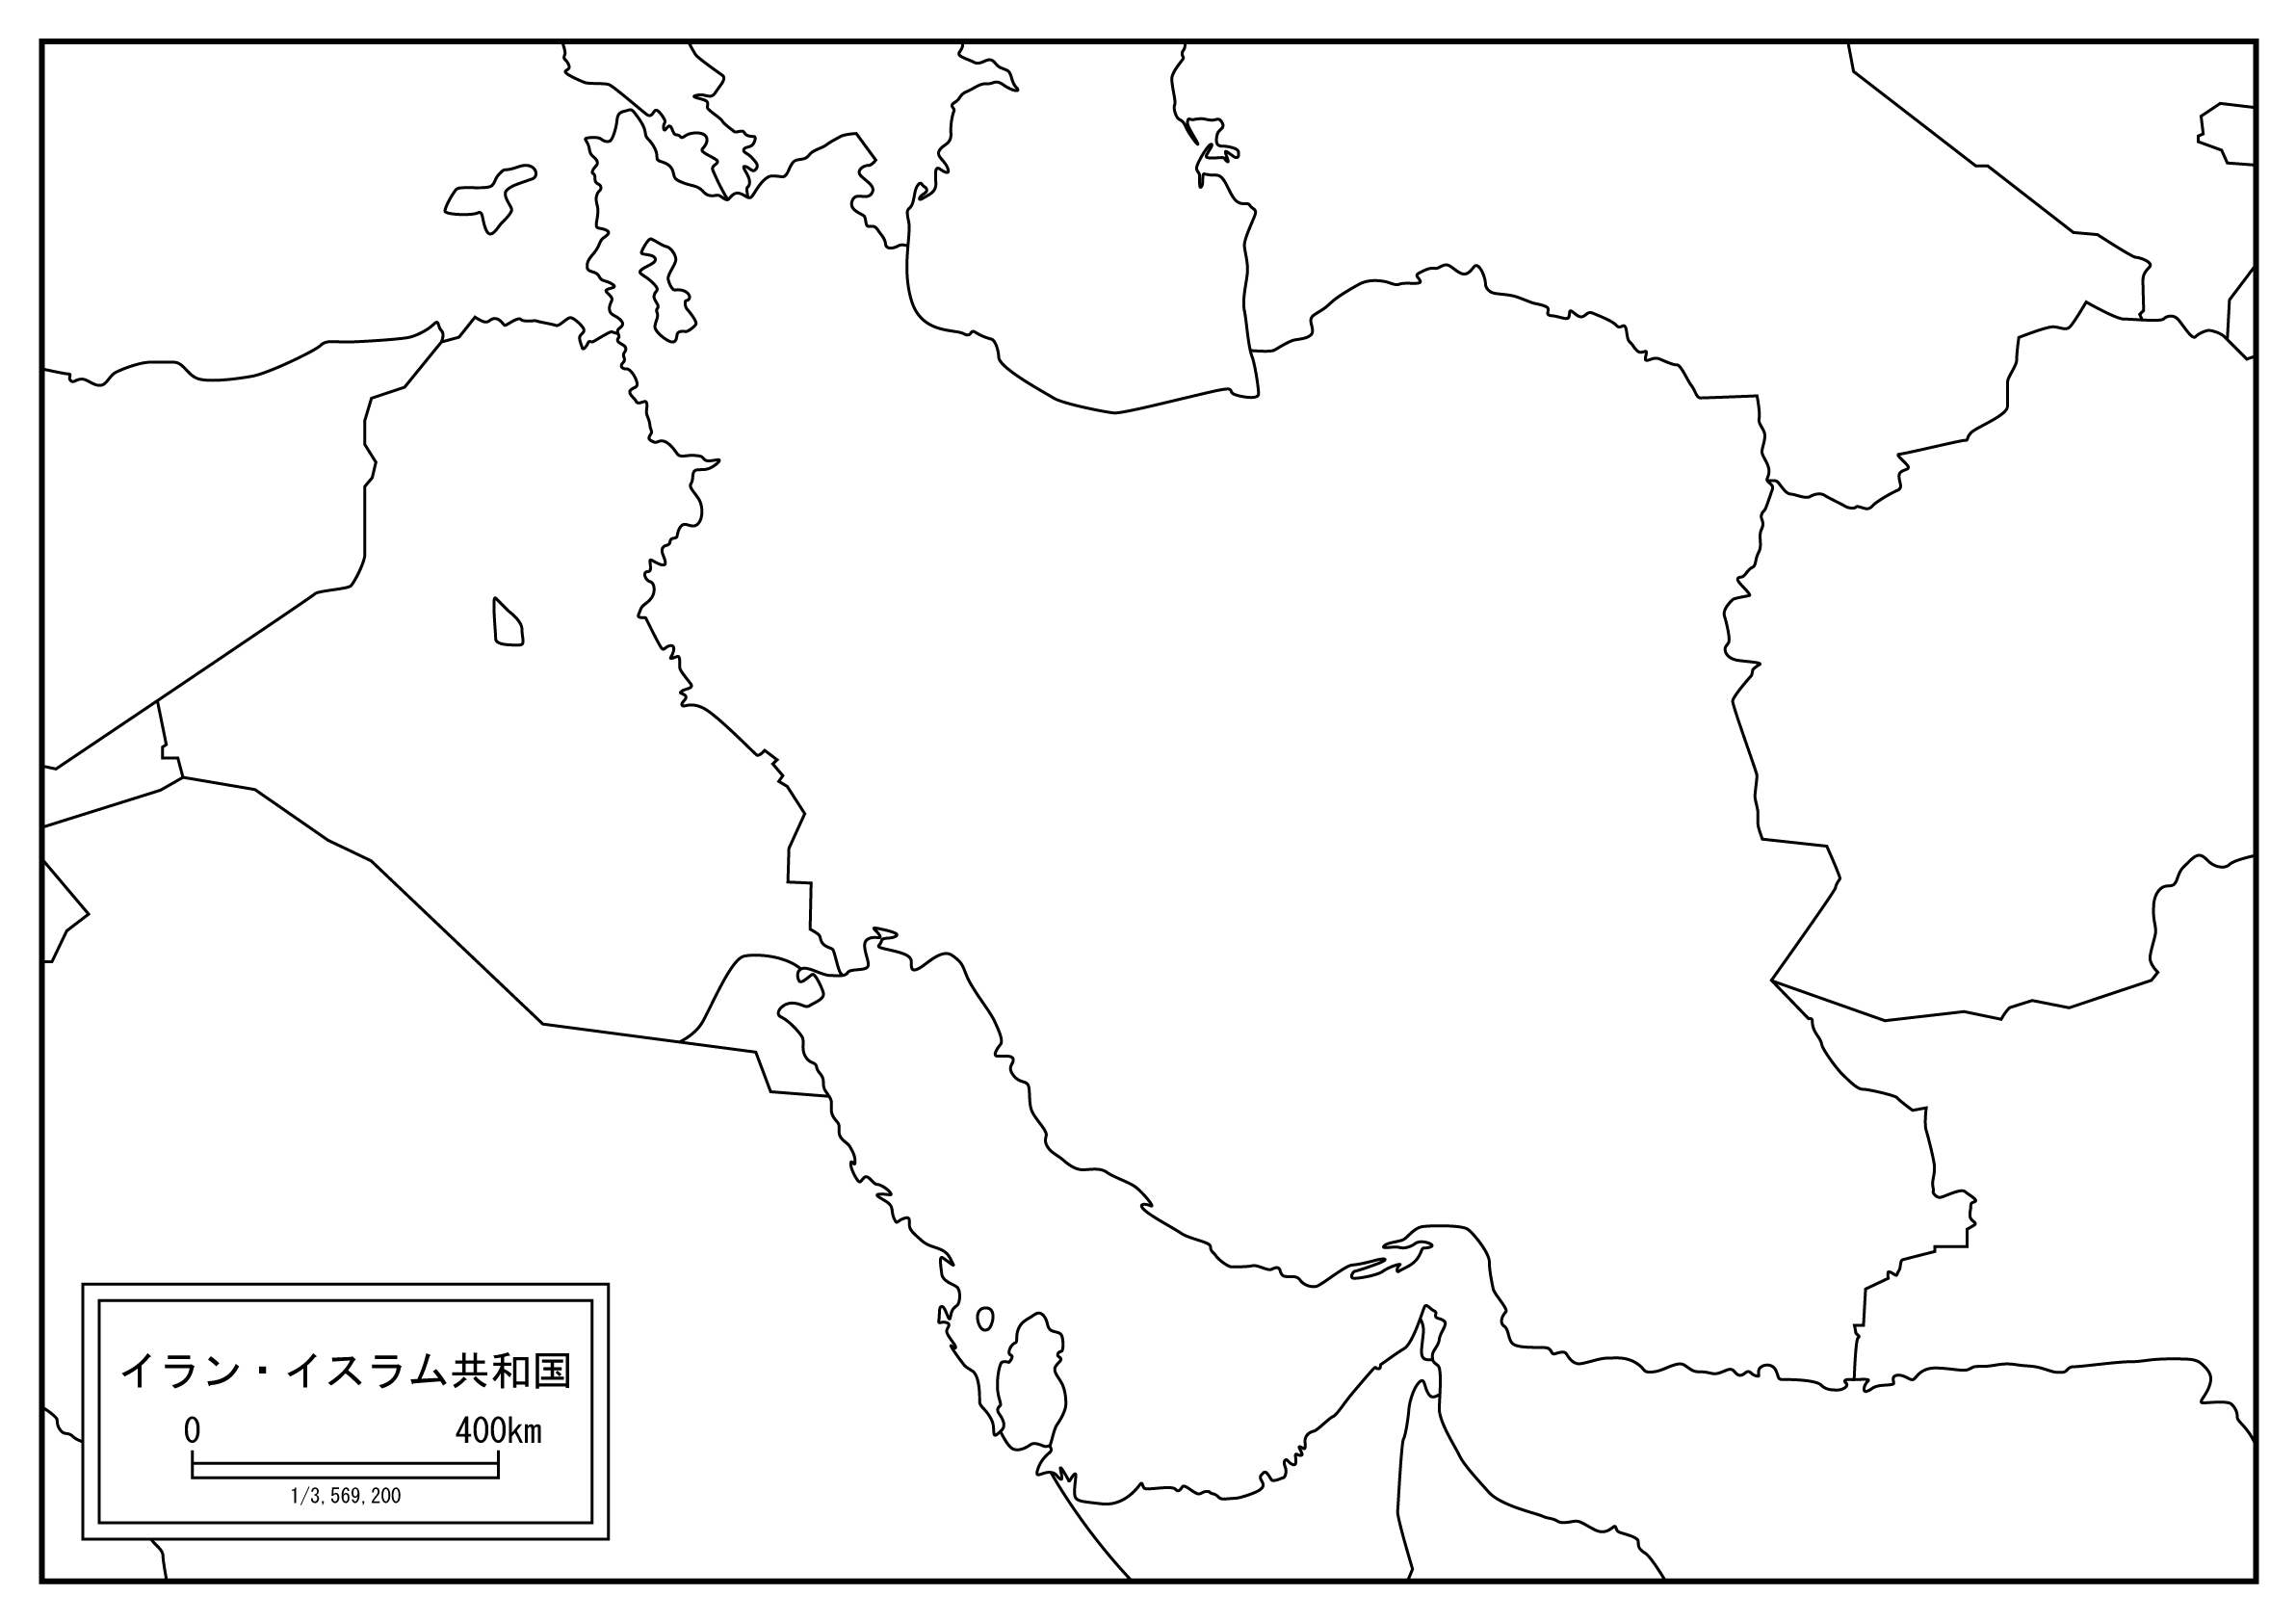 イランのサムネイル